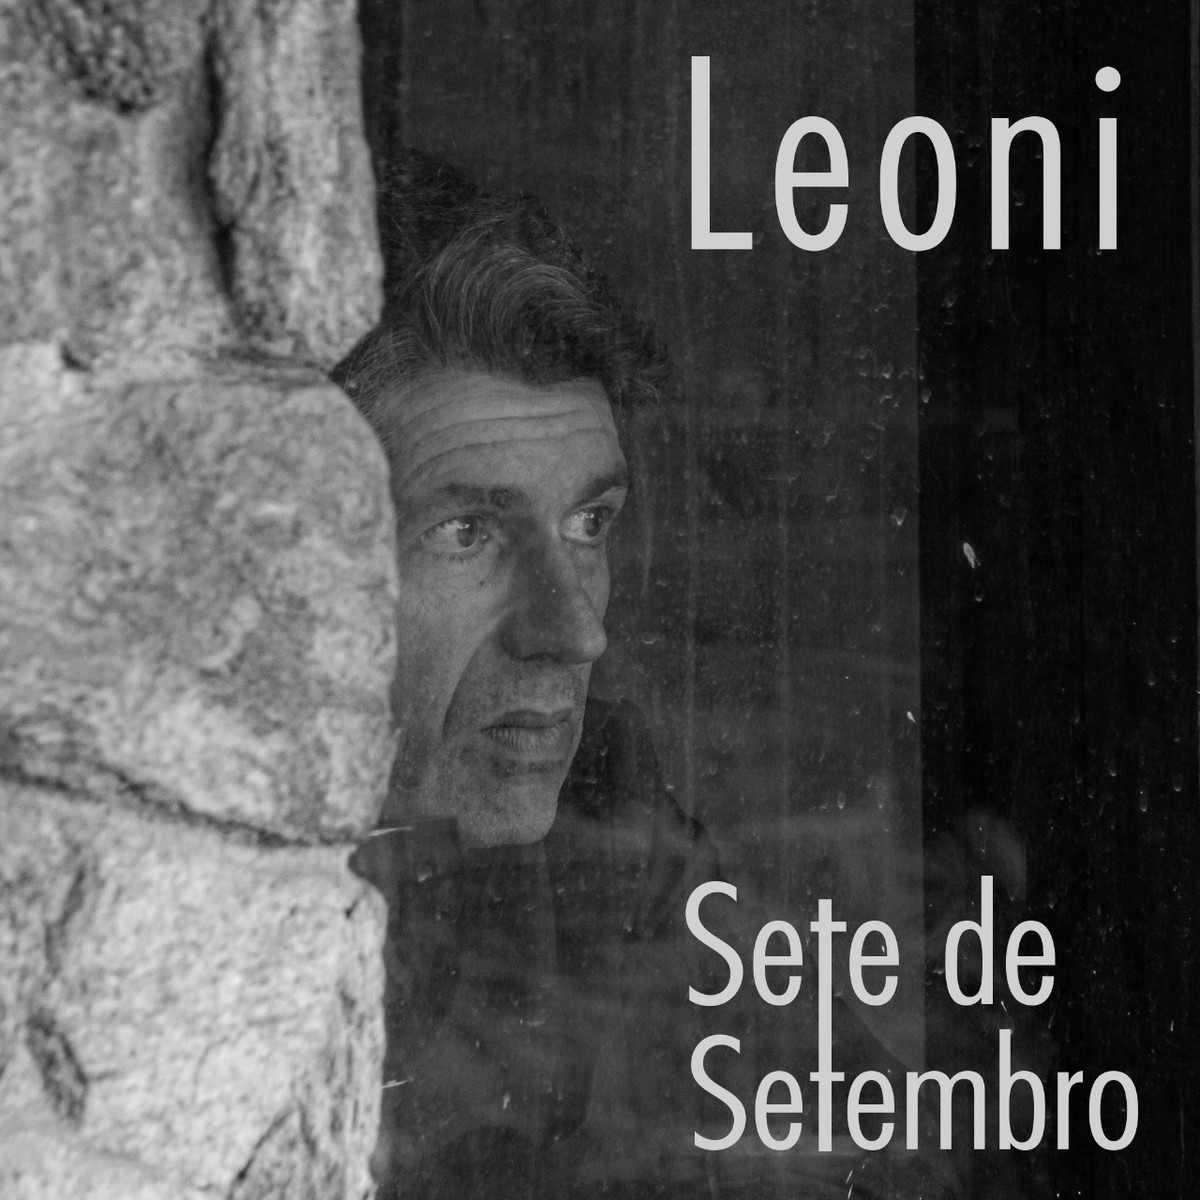 Leoni lança single ‘Sete de setembro’ com inédita canção feita há 30 anos com inspiração no filme ‘Não amarás’ | Blog do Mauro Ferreira